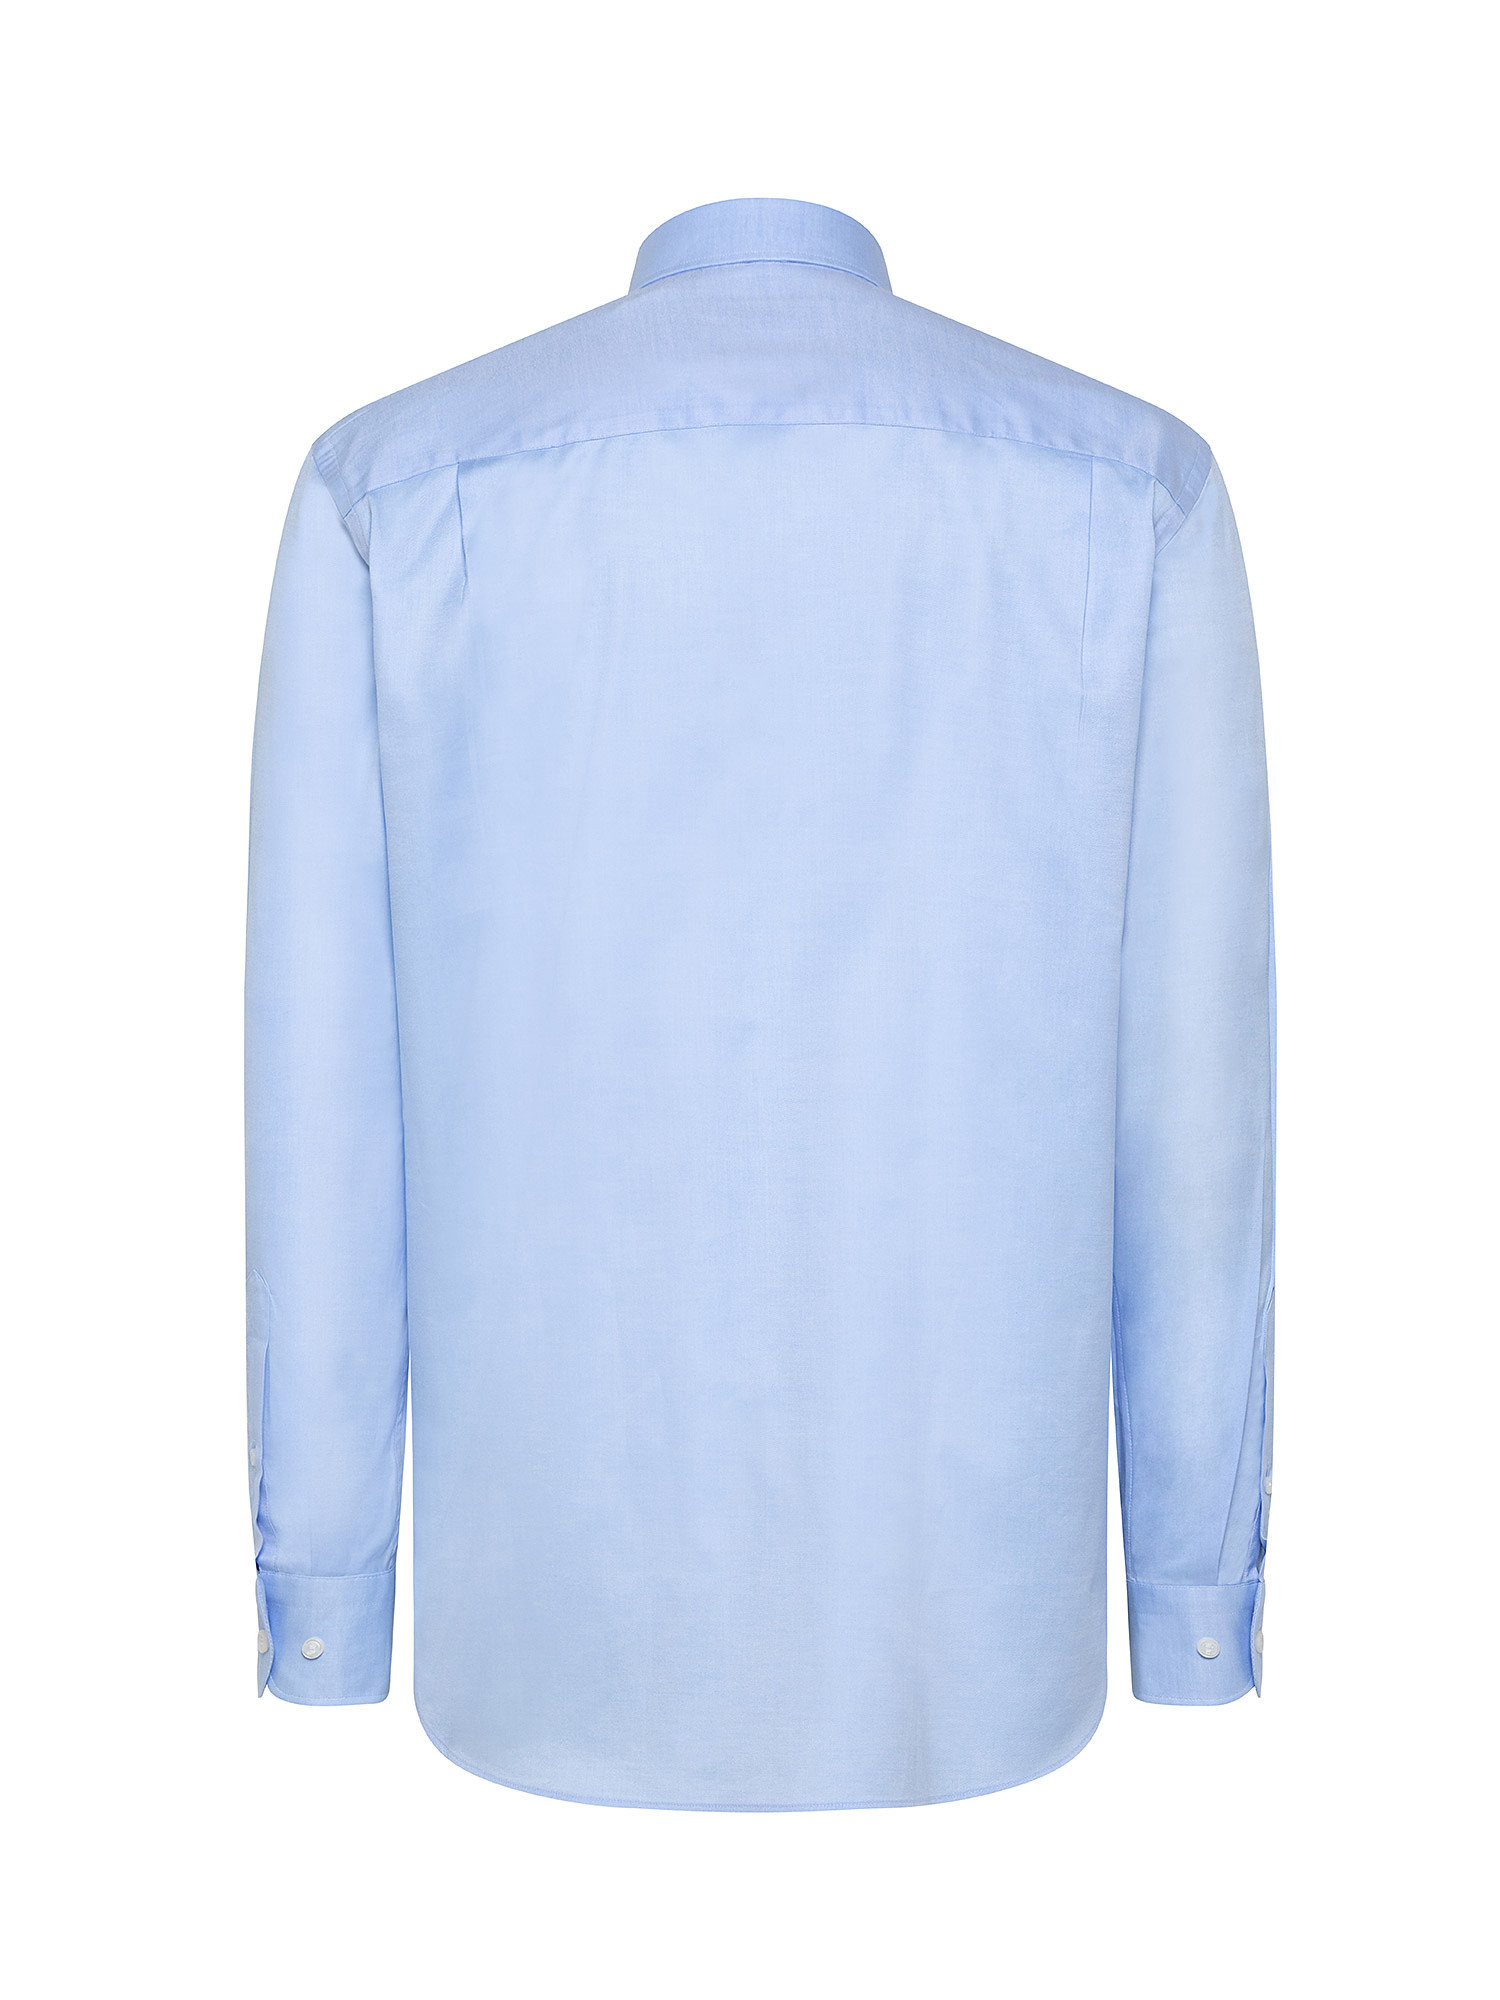 Camicia regular fit in twill doppio ritorto, Azzurro, large image number 1